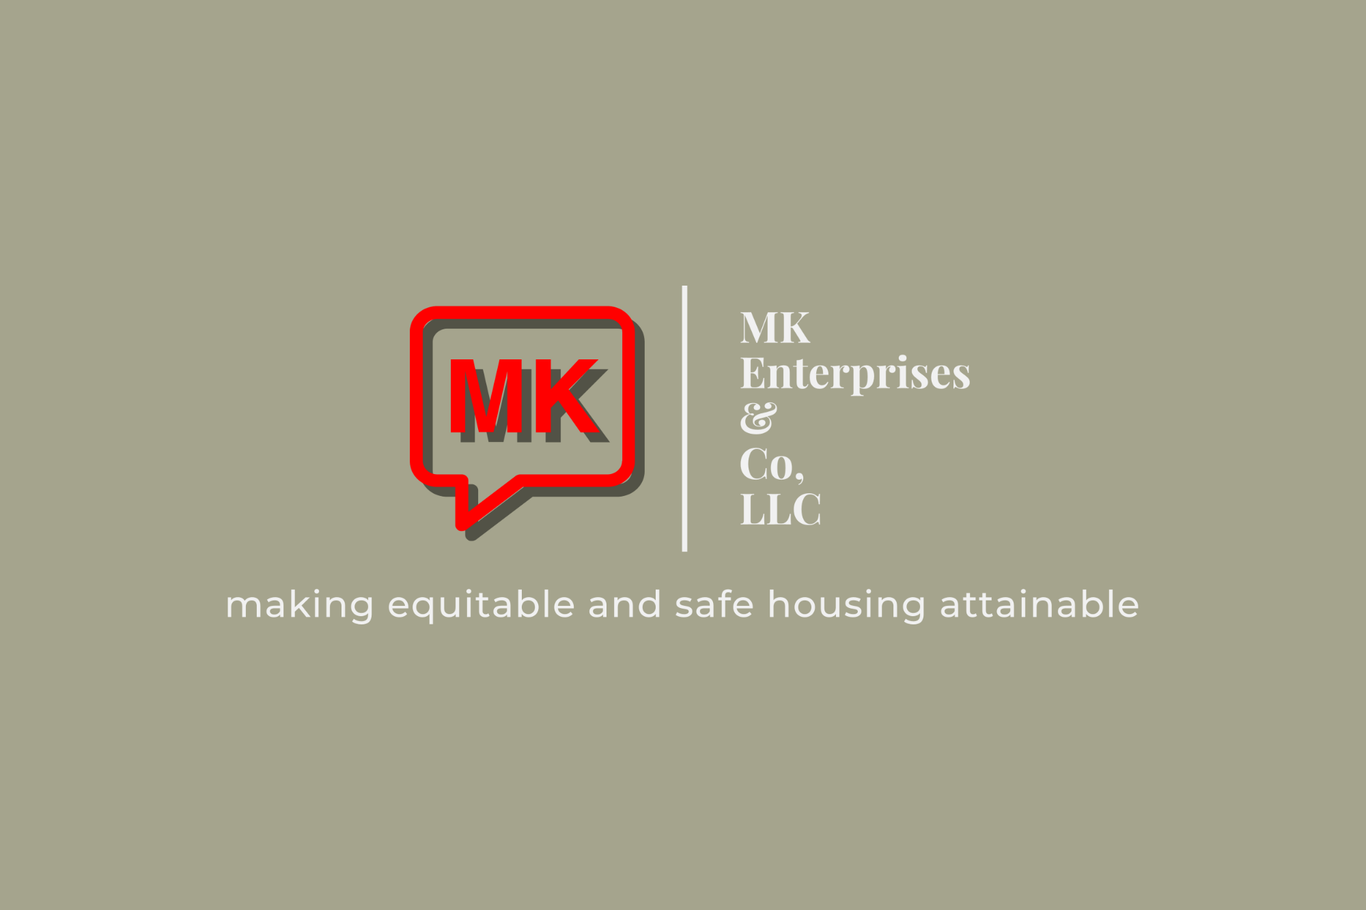 MK ENTERPRISES & CO, LLC